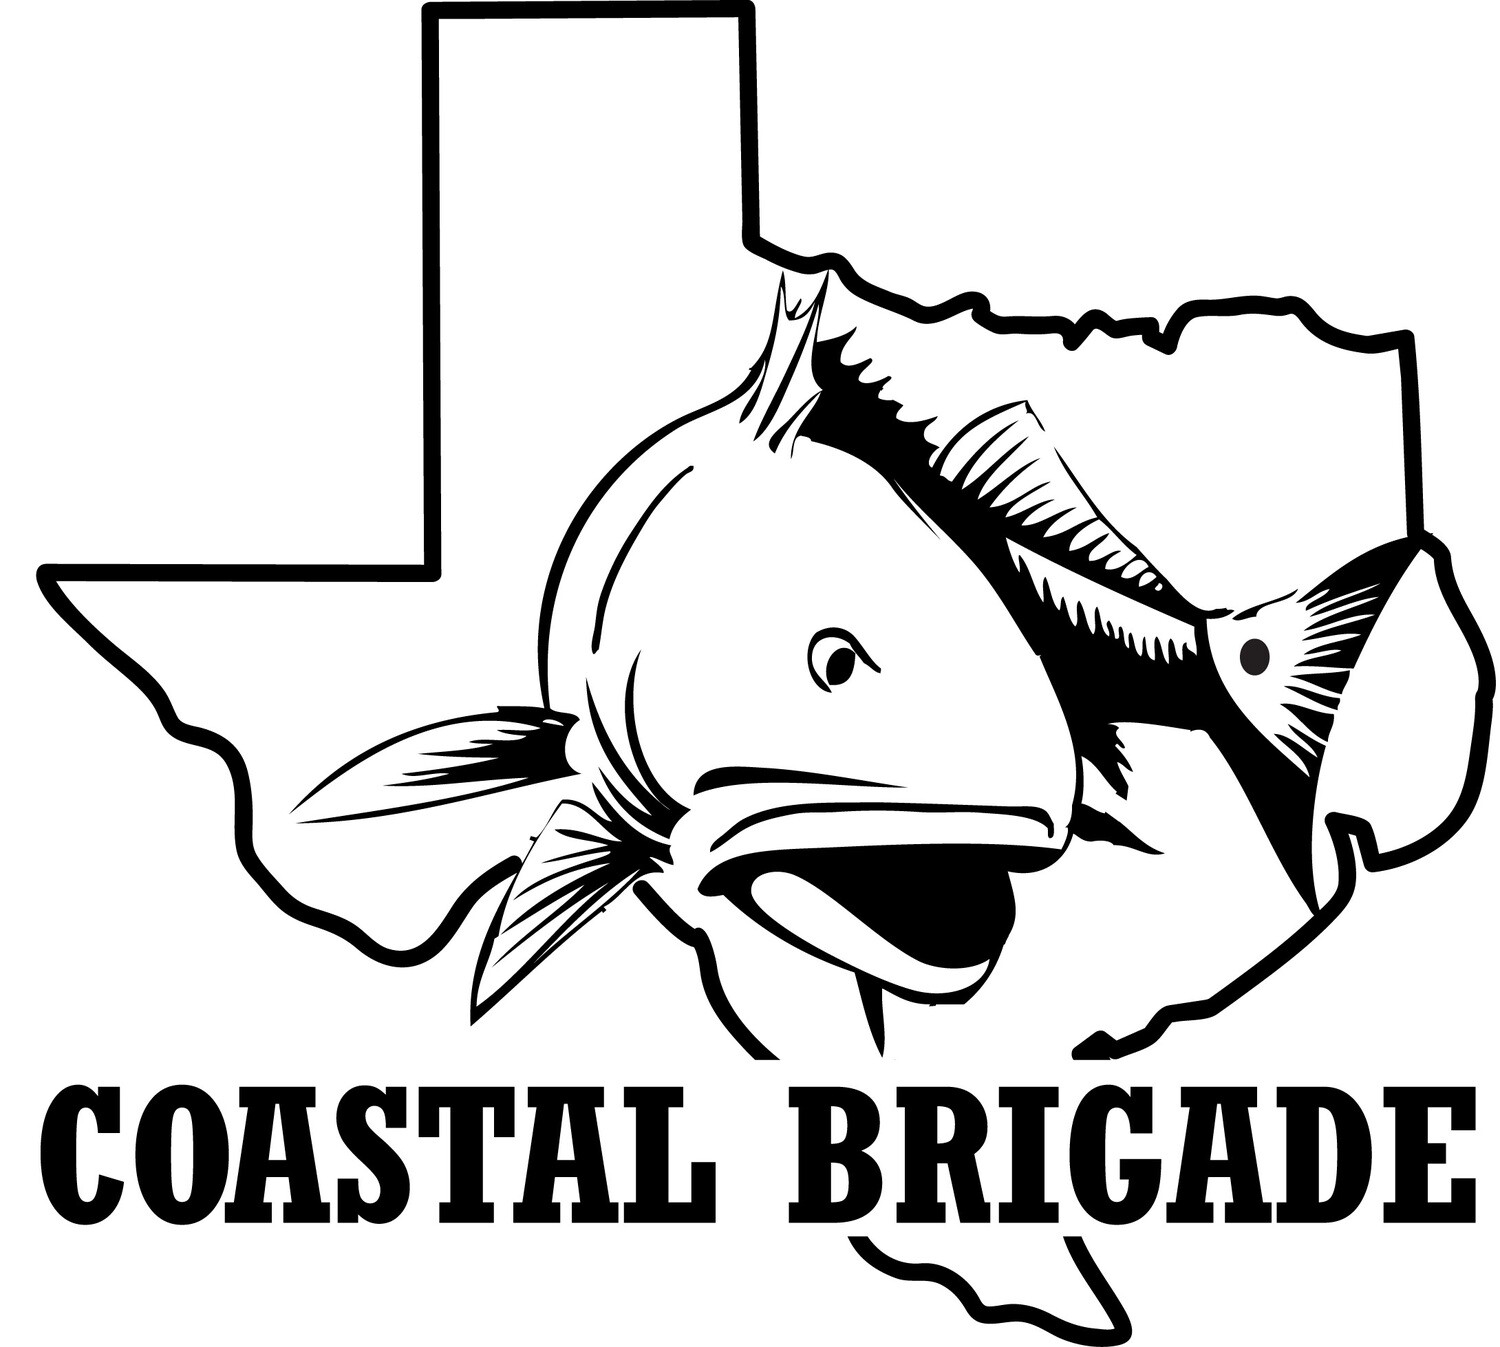 Individual Ticket - Coastal Brigade Fundraiser